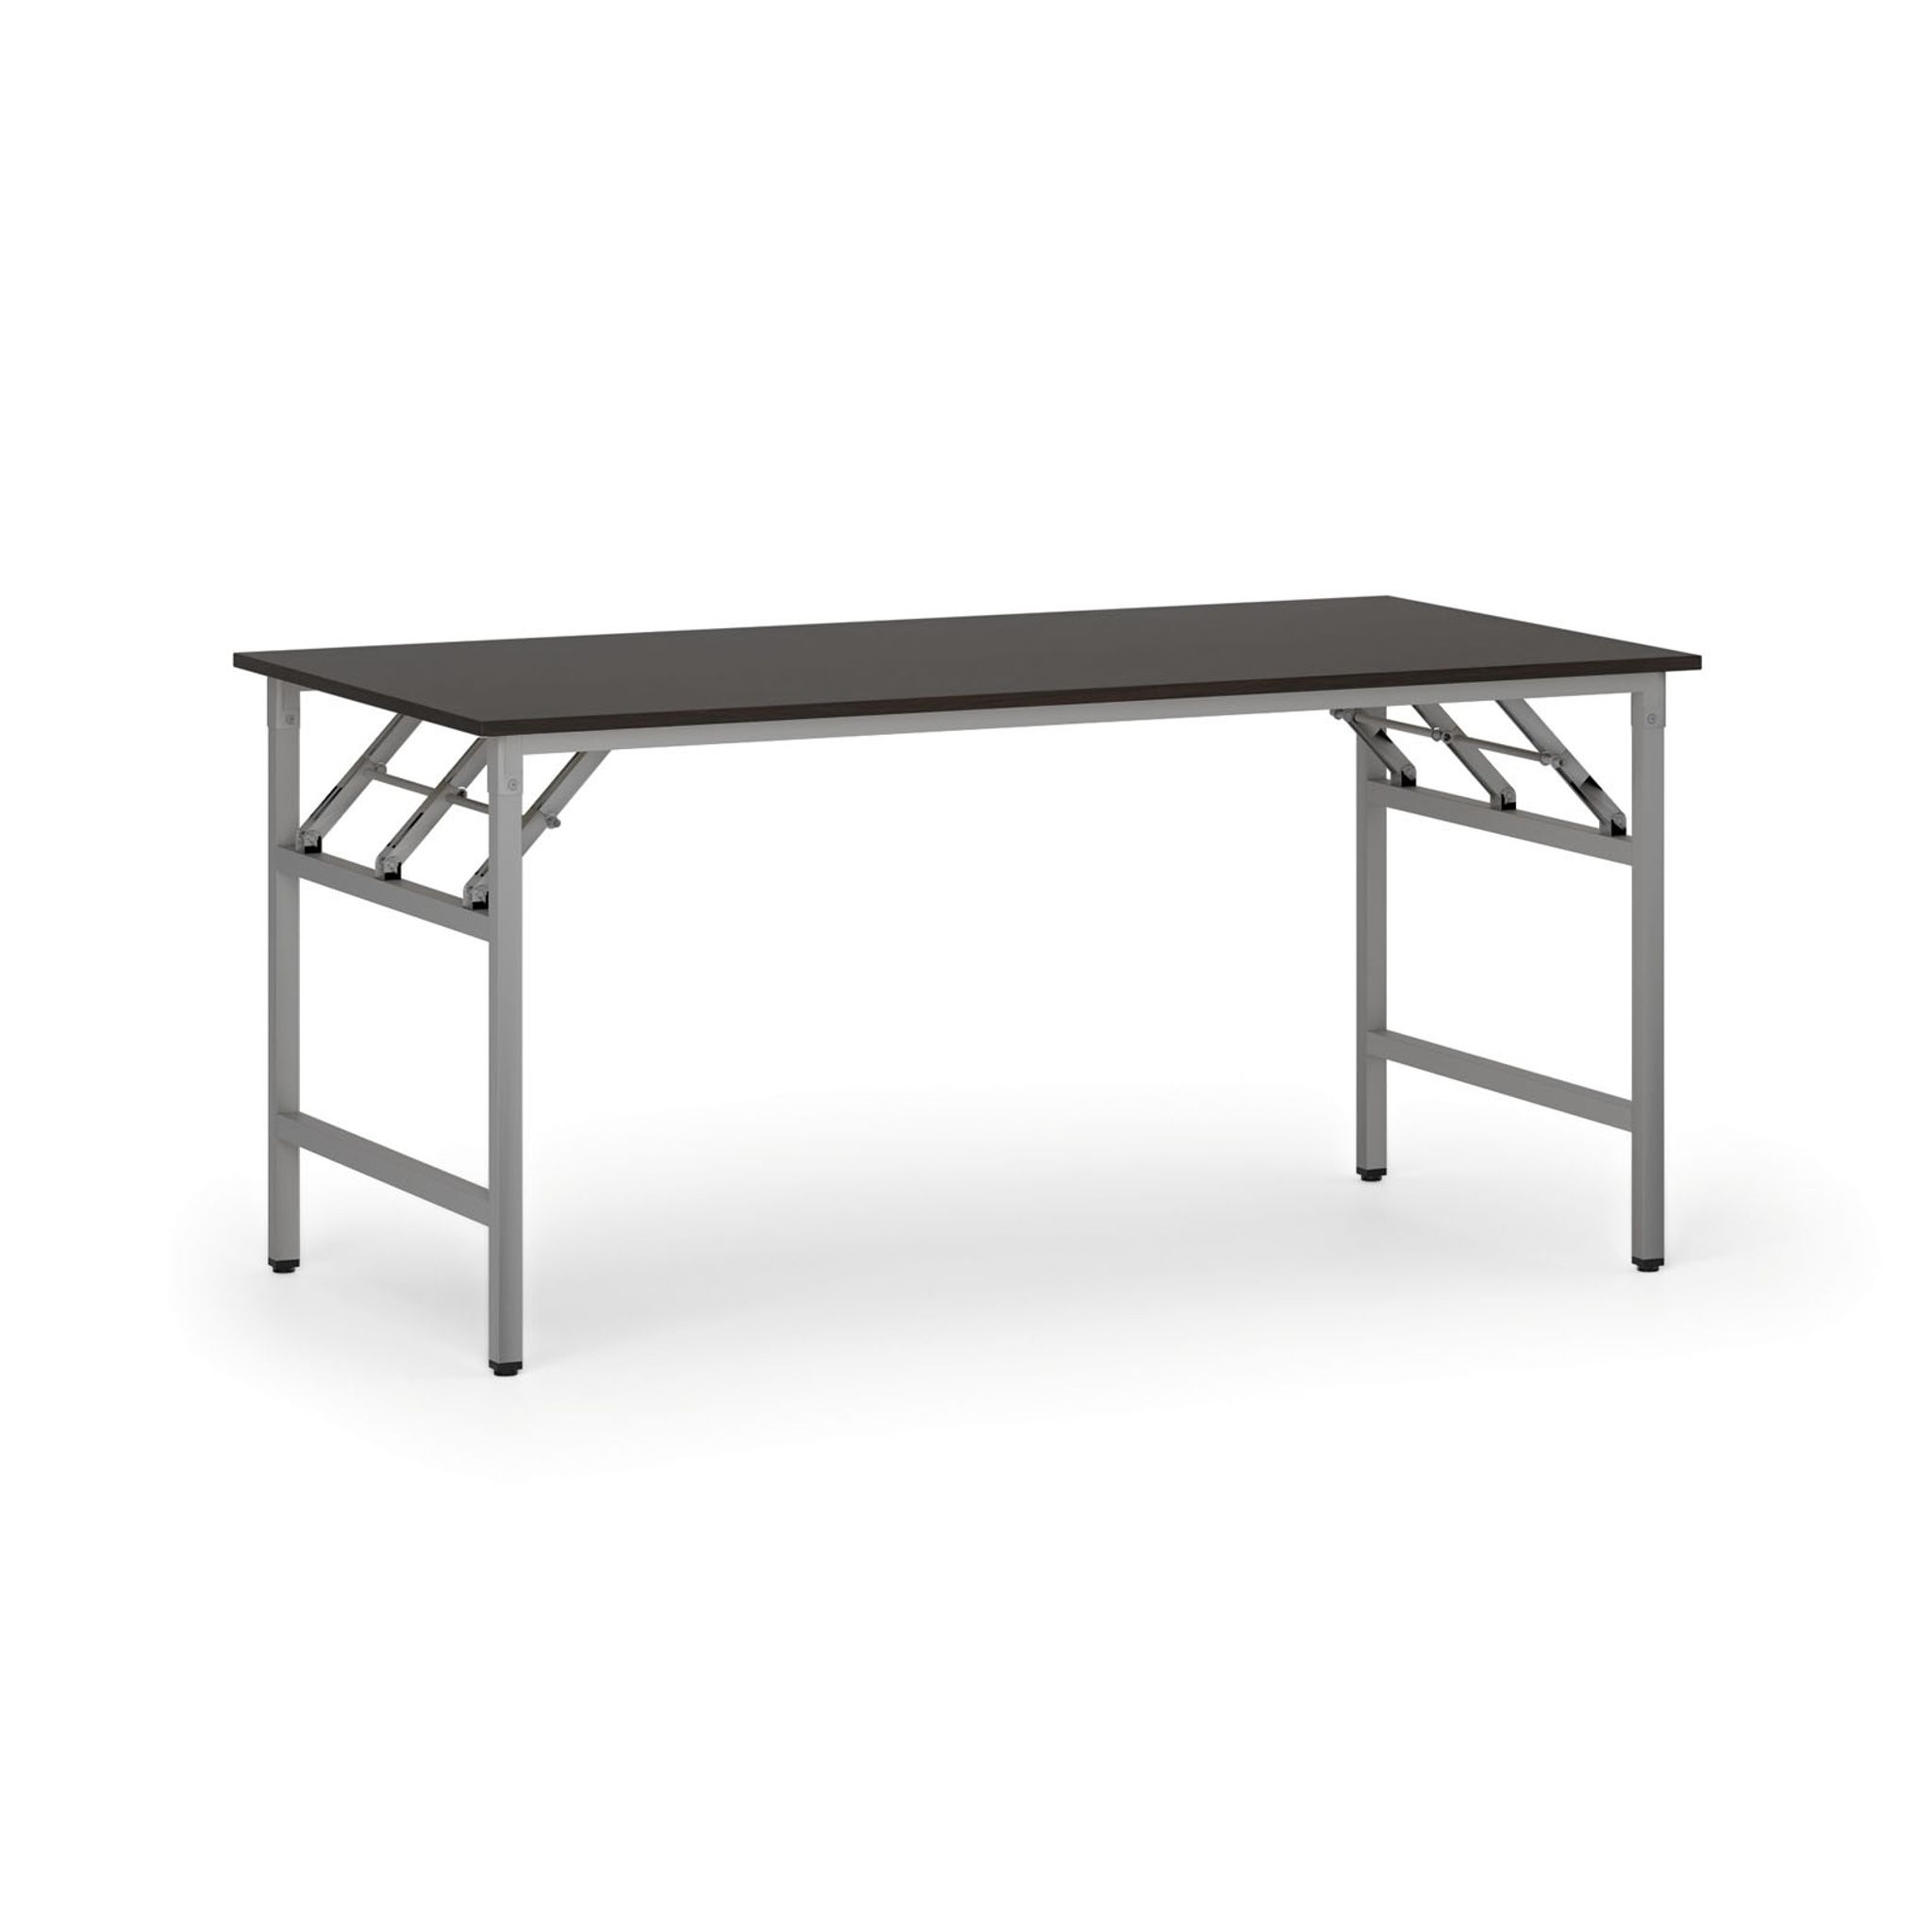 Konferenčný stôl FAST READY so striebornosivou podnožou, 1600 x 800 x 750 mm, wenge